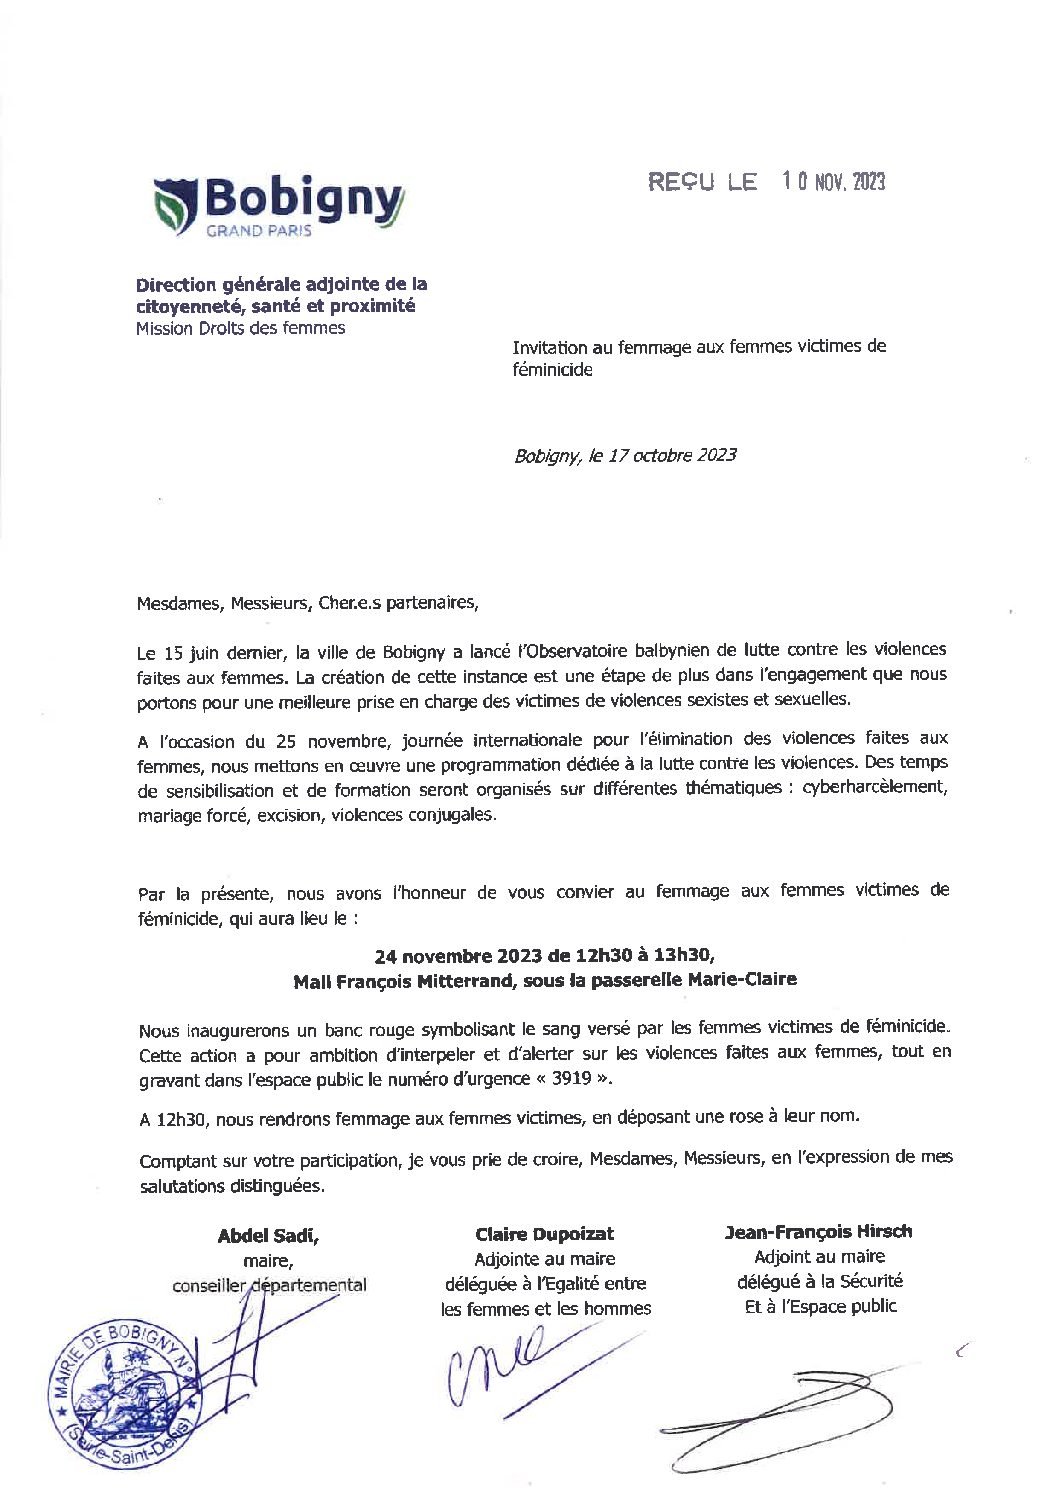 24 novembre 2023 : 12h30 – Mail François Mitterrand à Bobigny – Femmage aux victimes de féminicide.